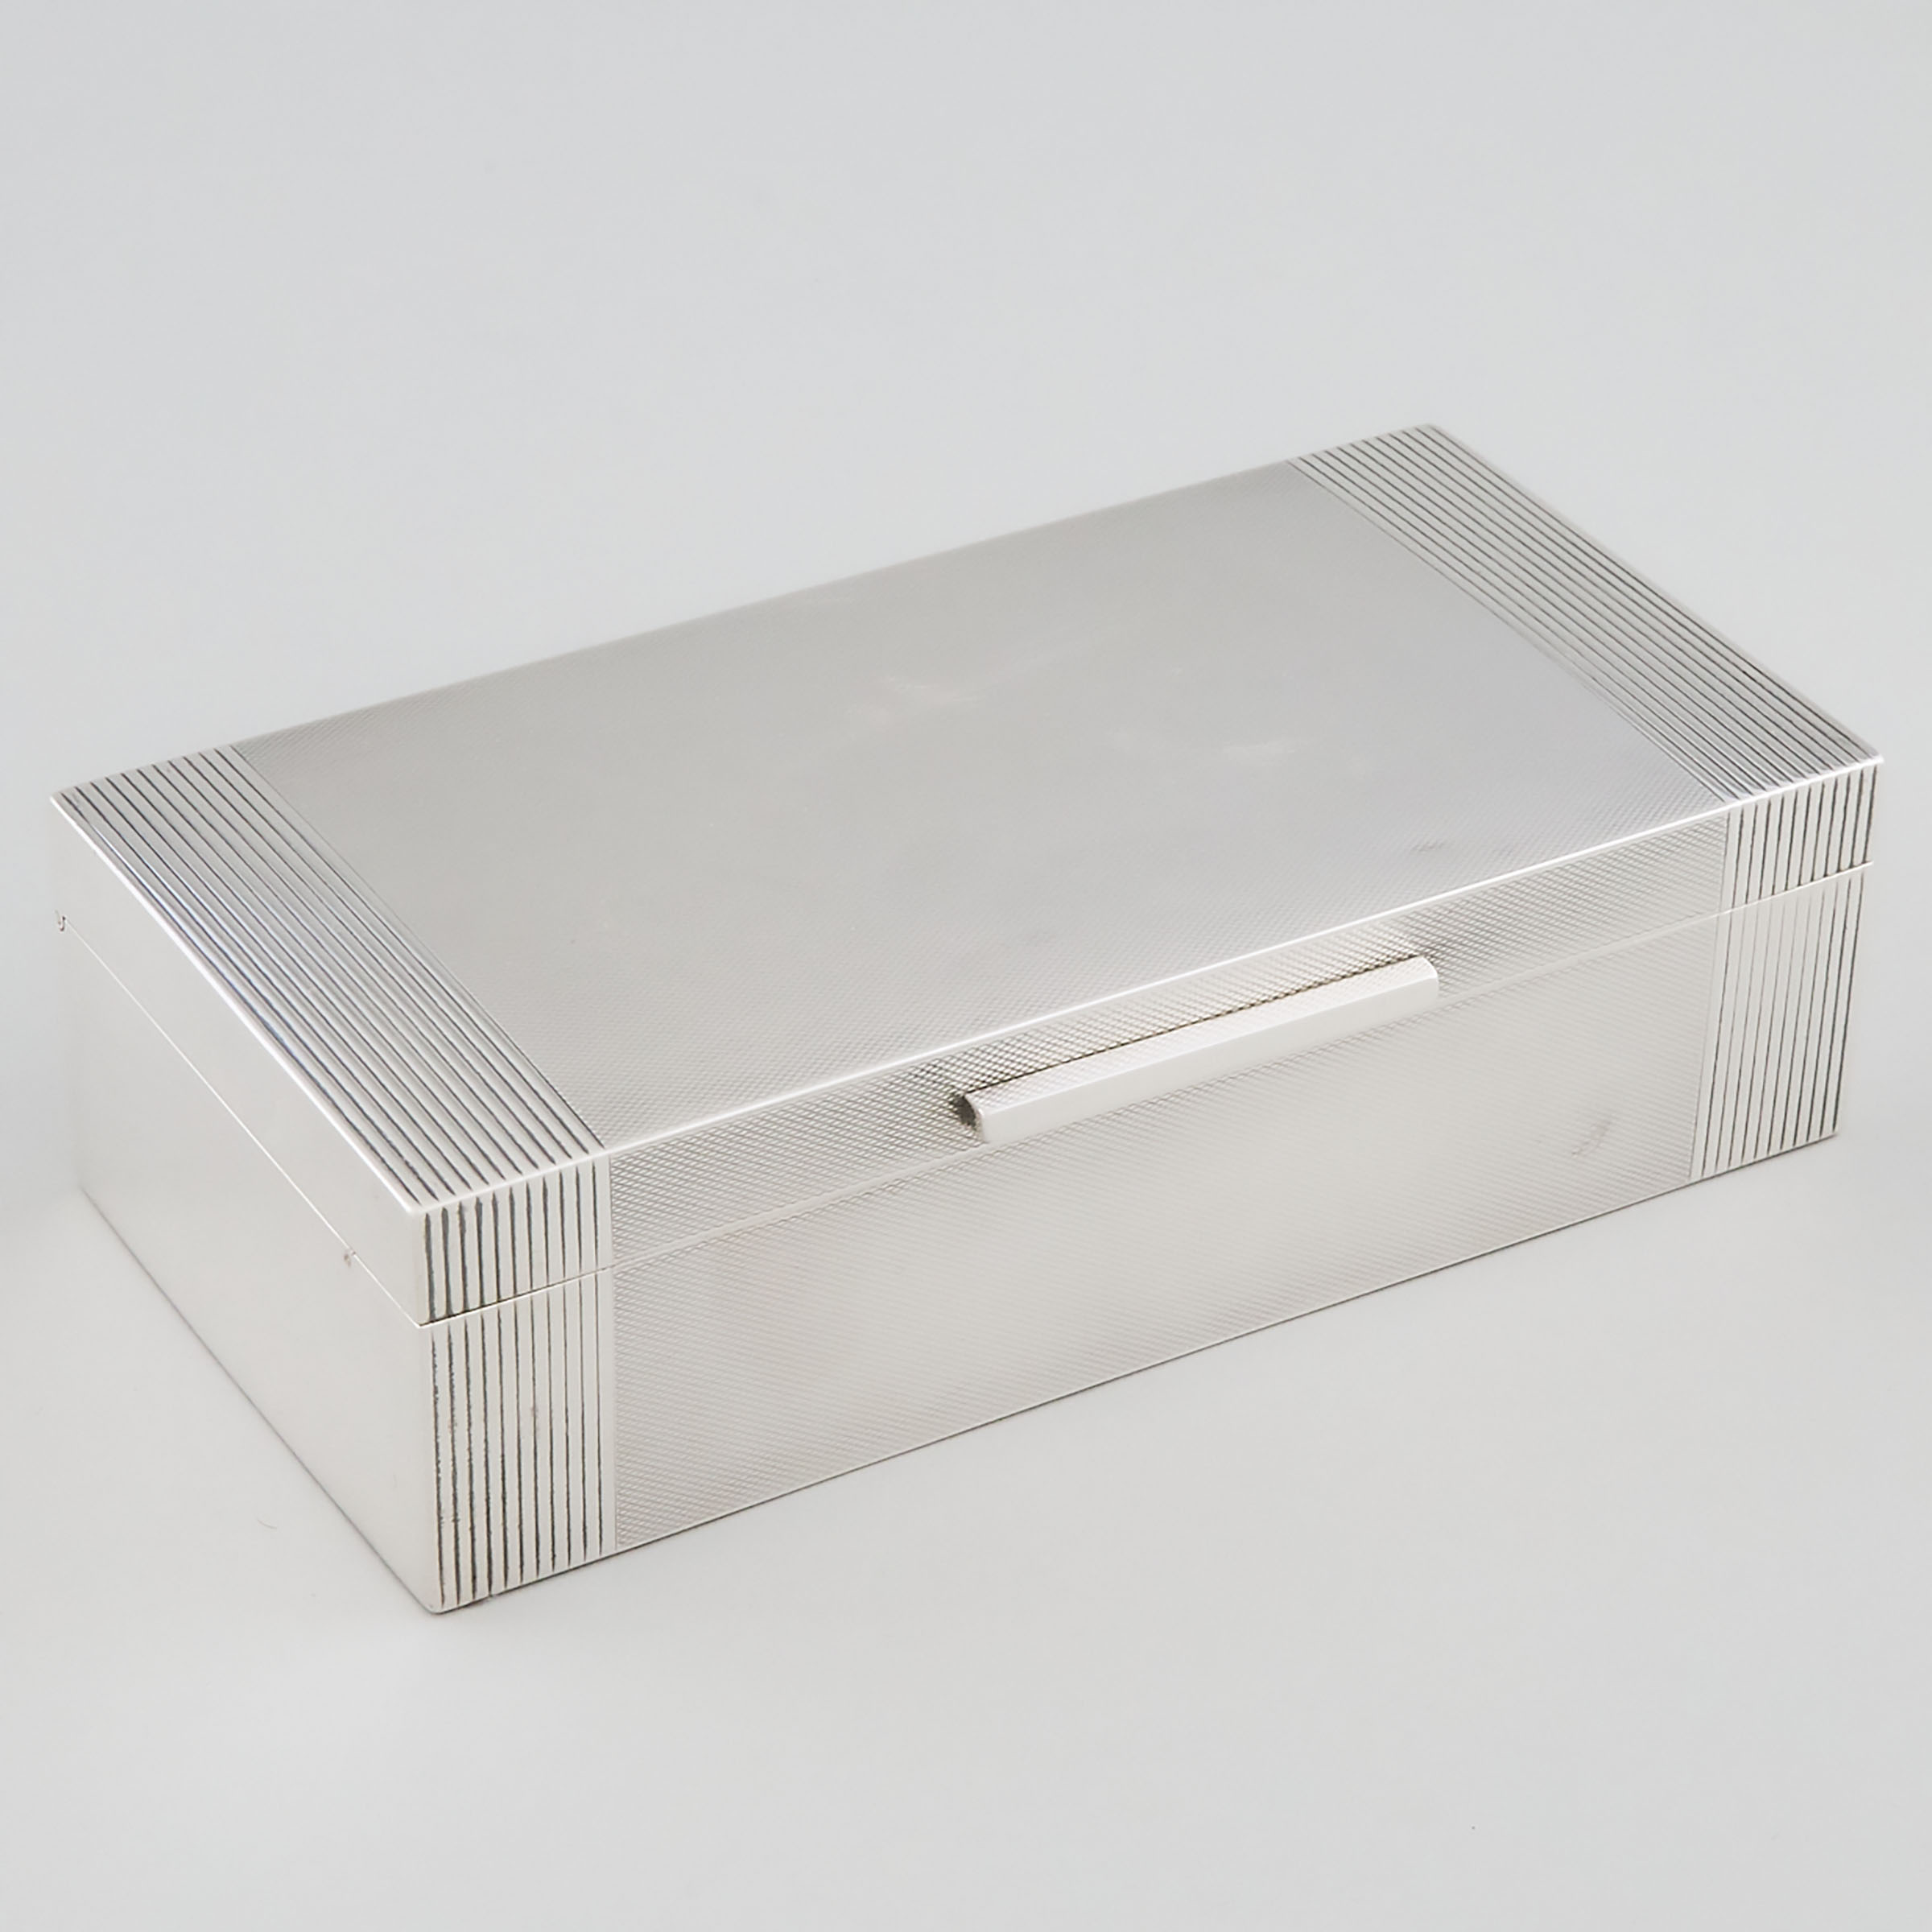 English Silver Rectangular Cigarette Box, William Suckling, Birmingham, 1948